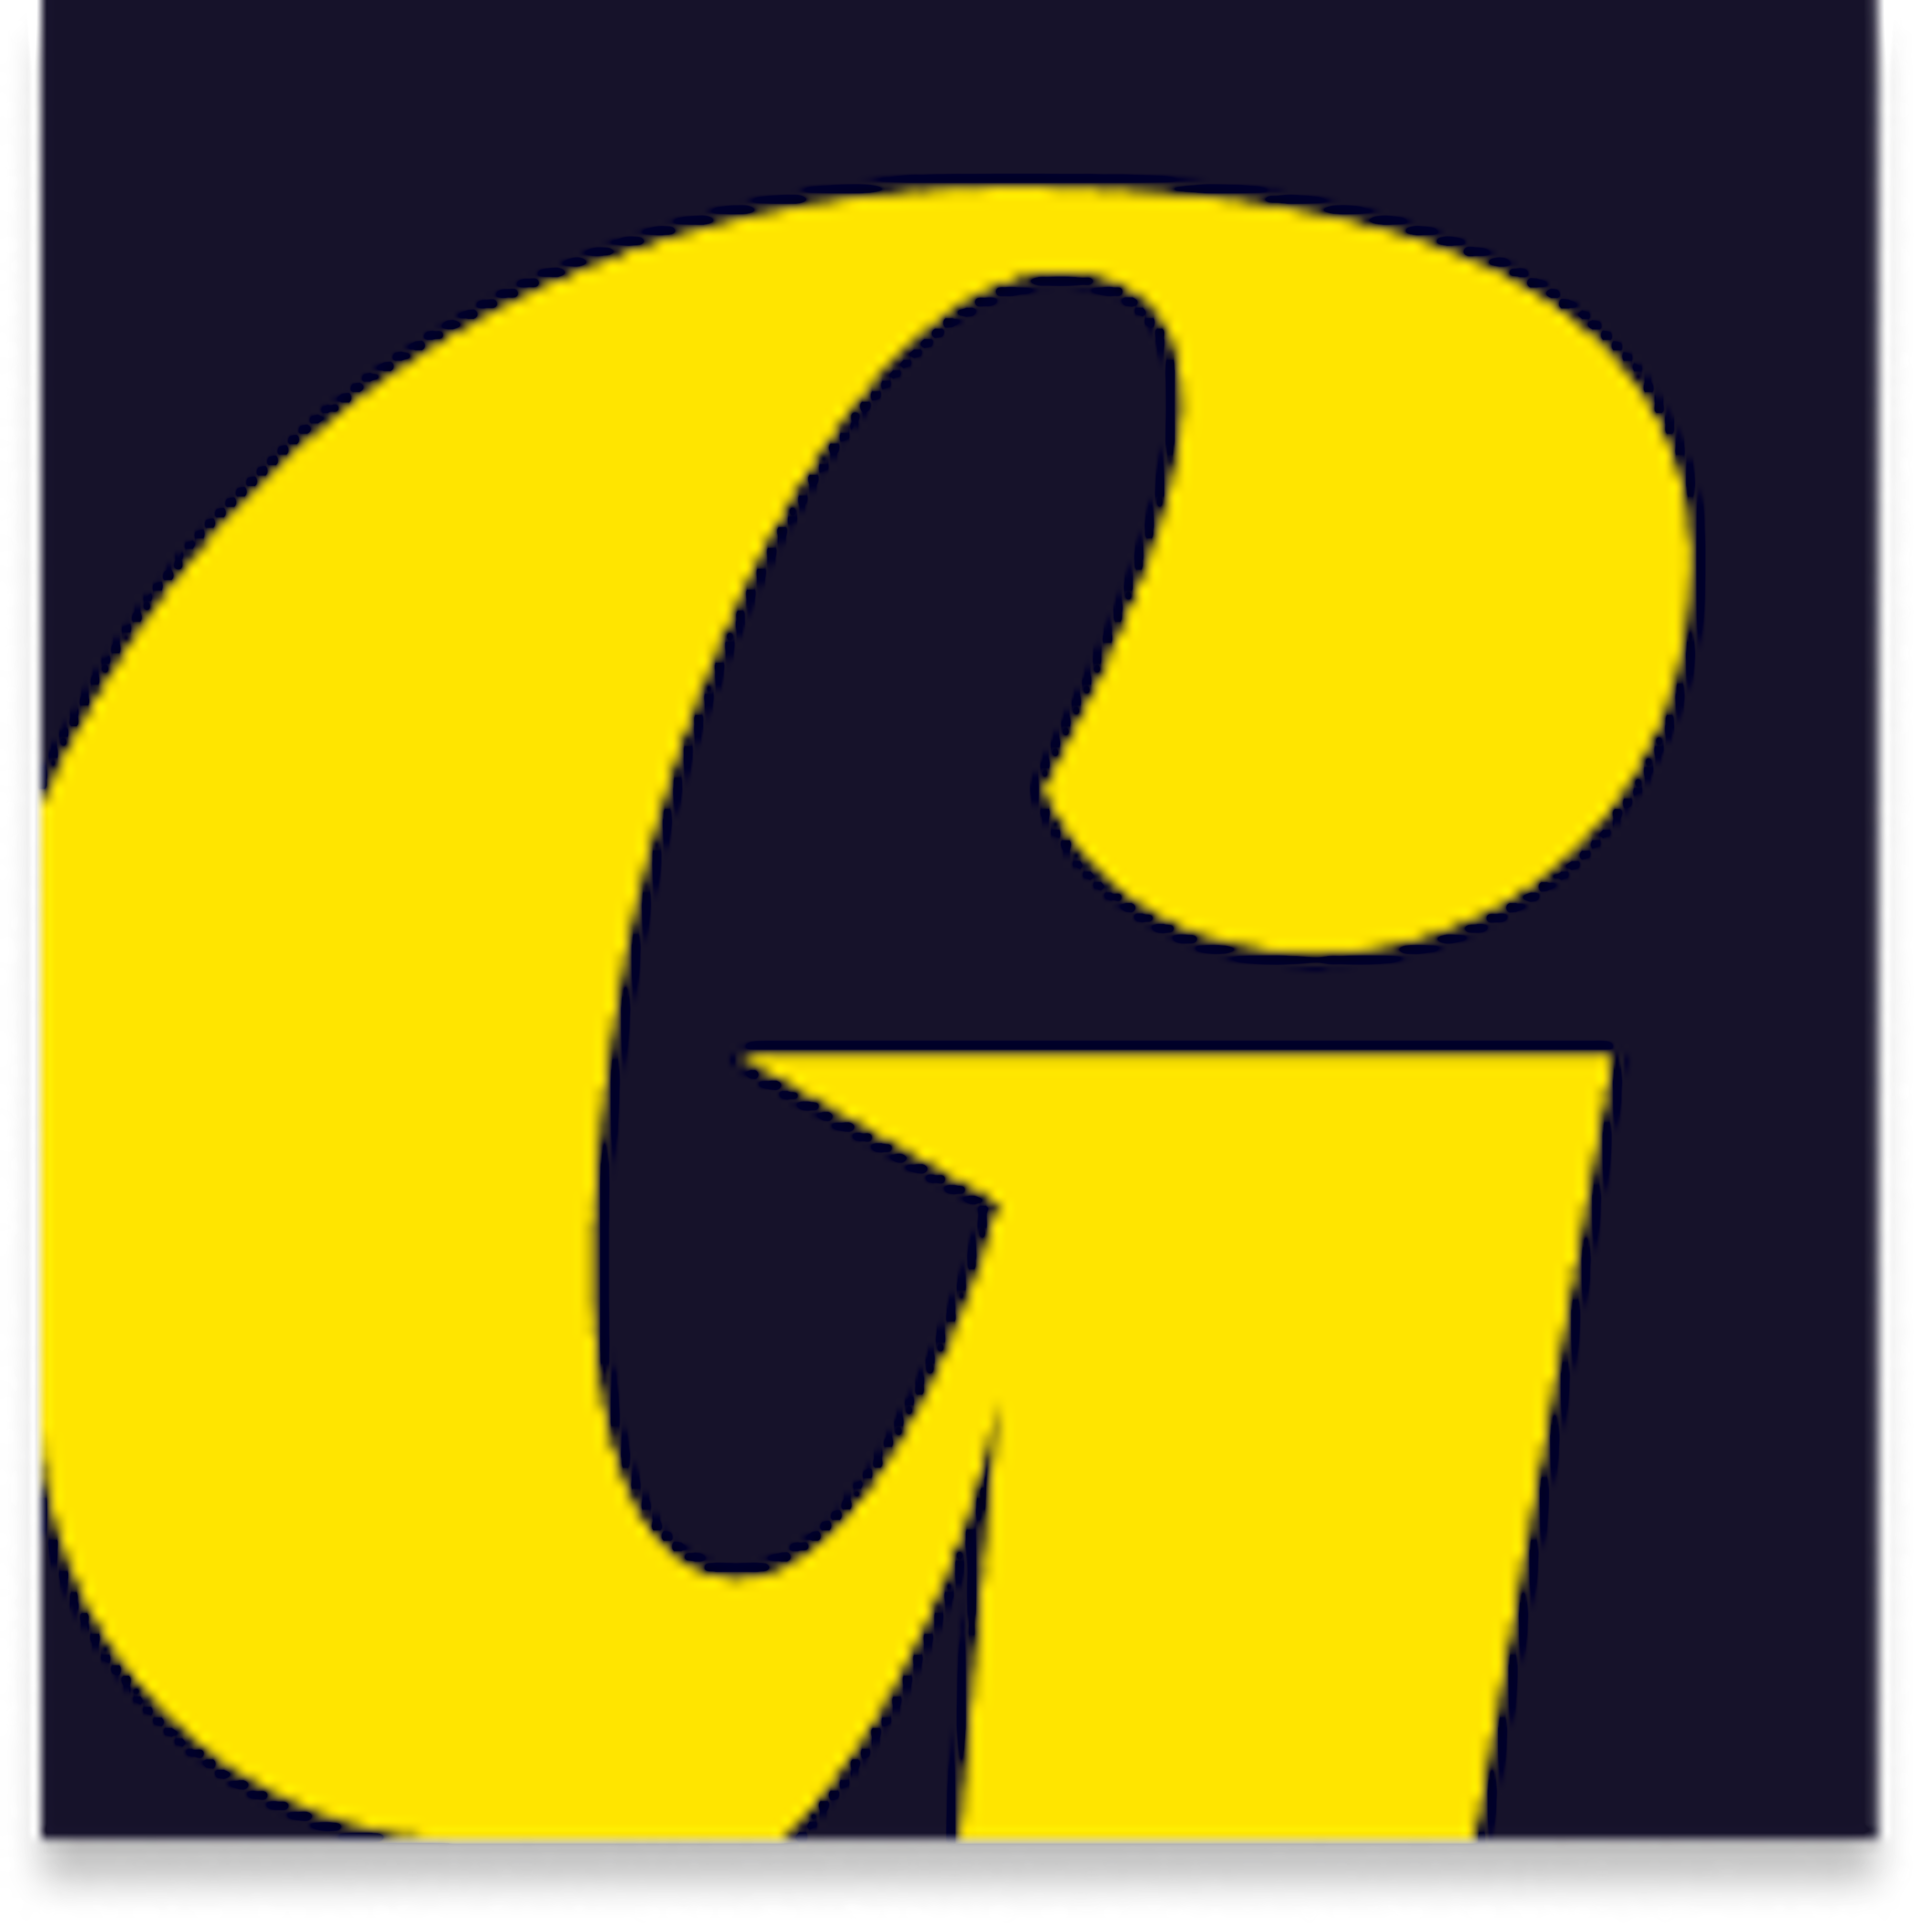 Goldie Logo